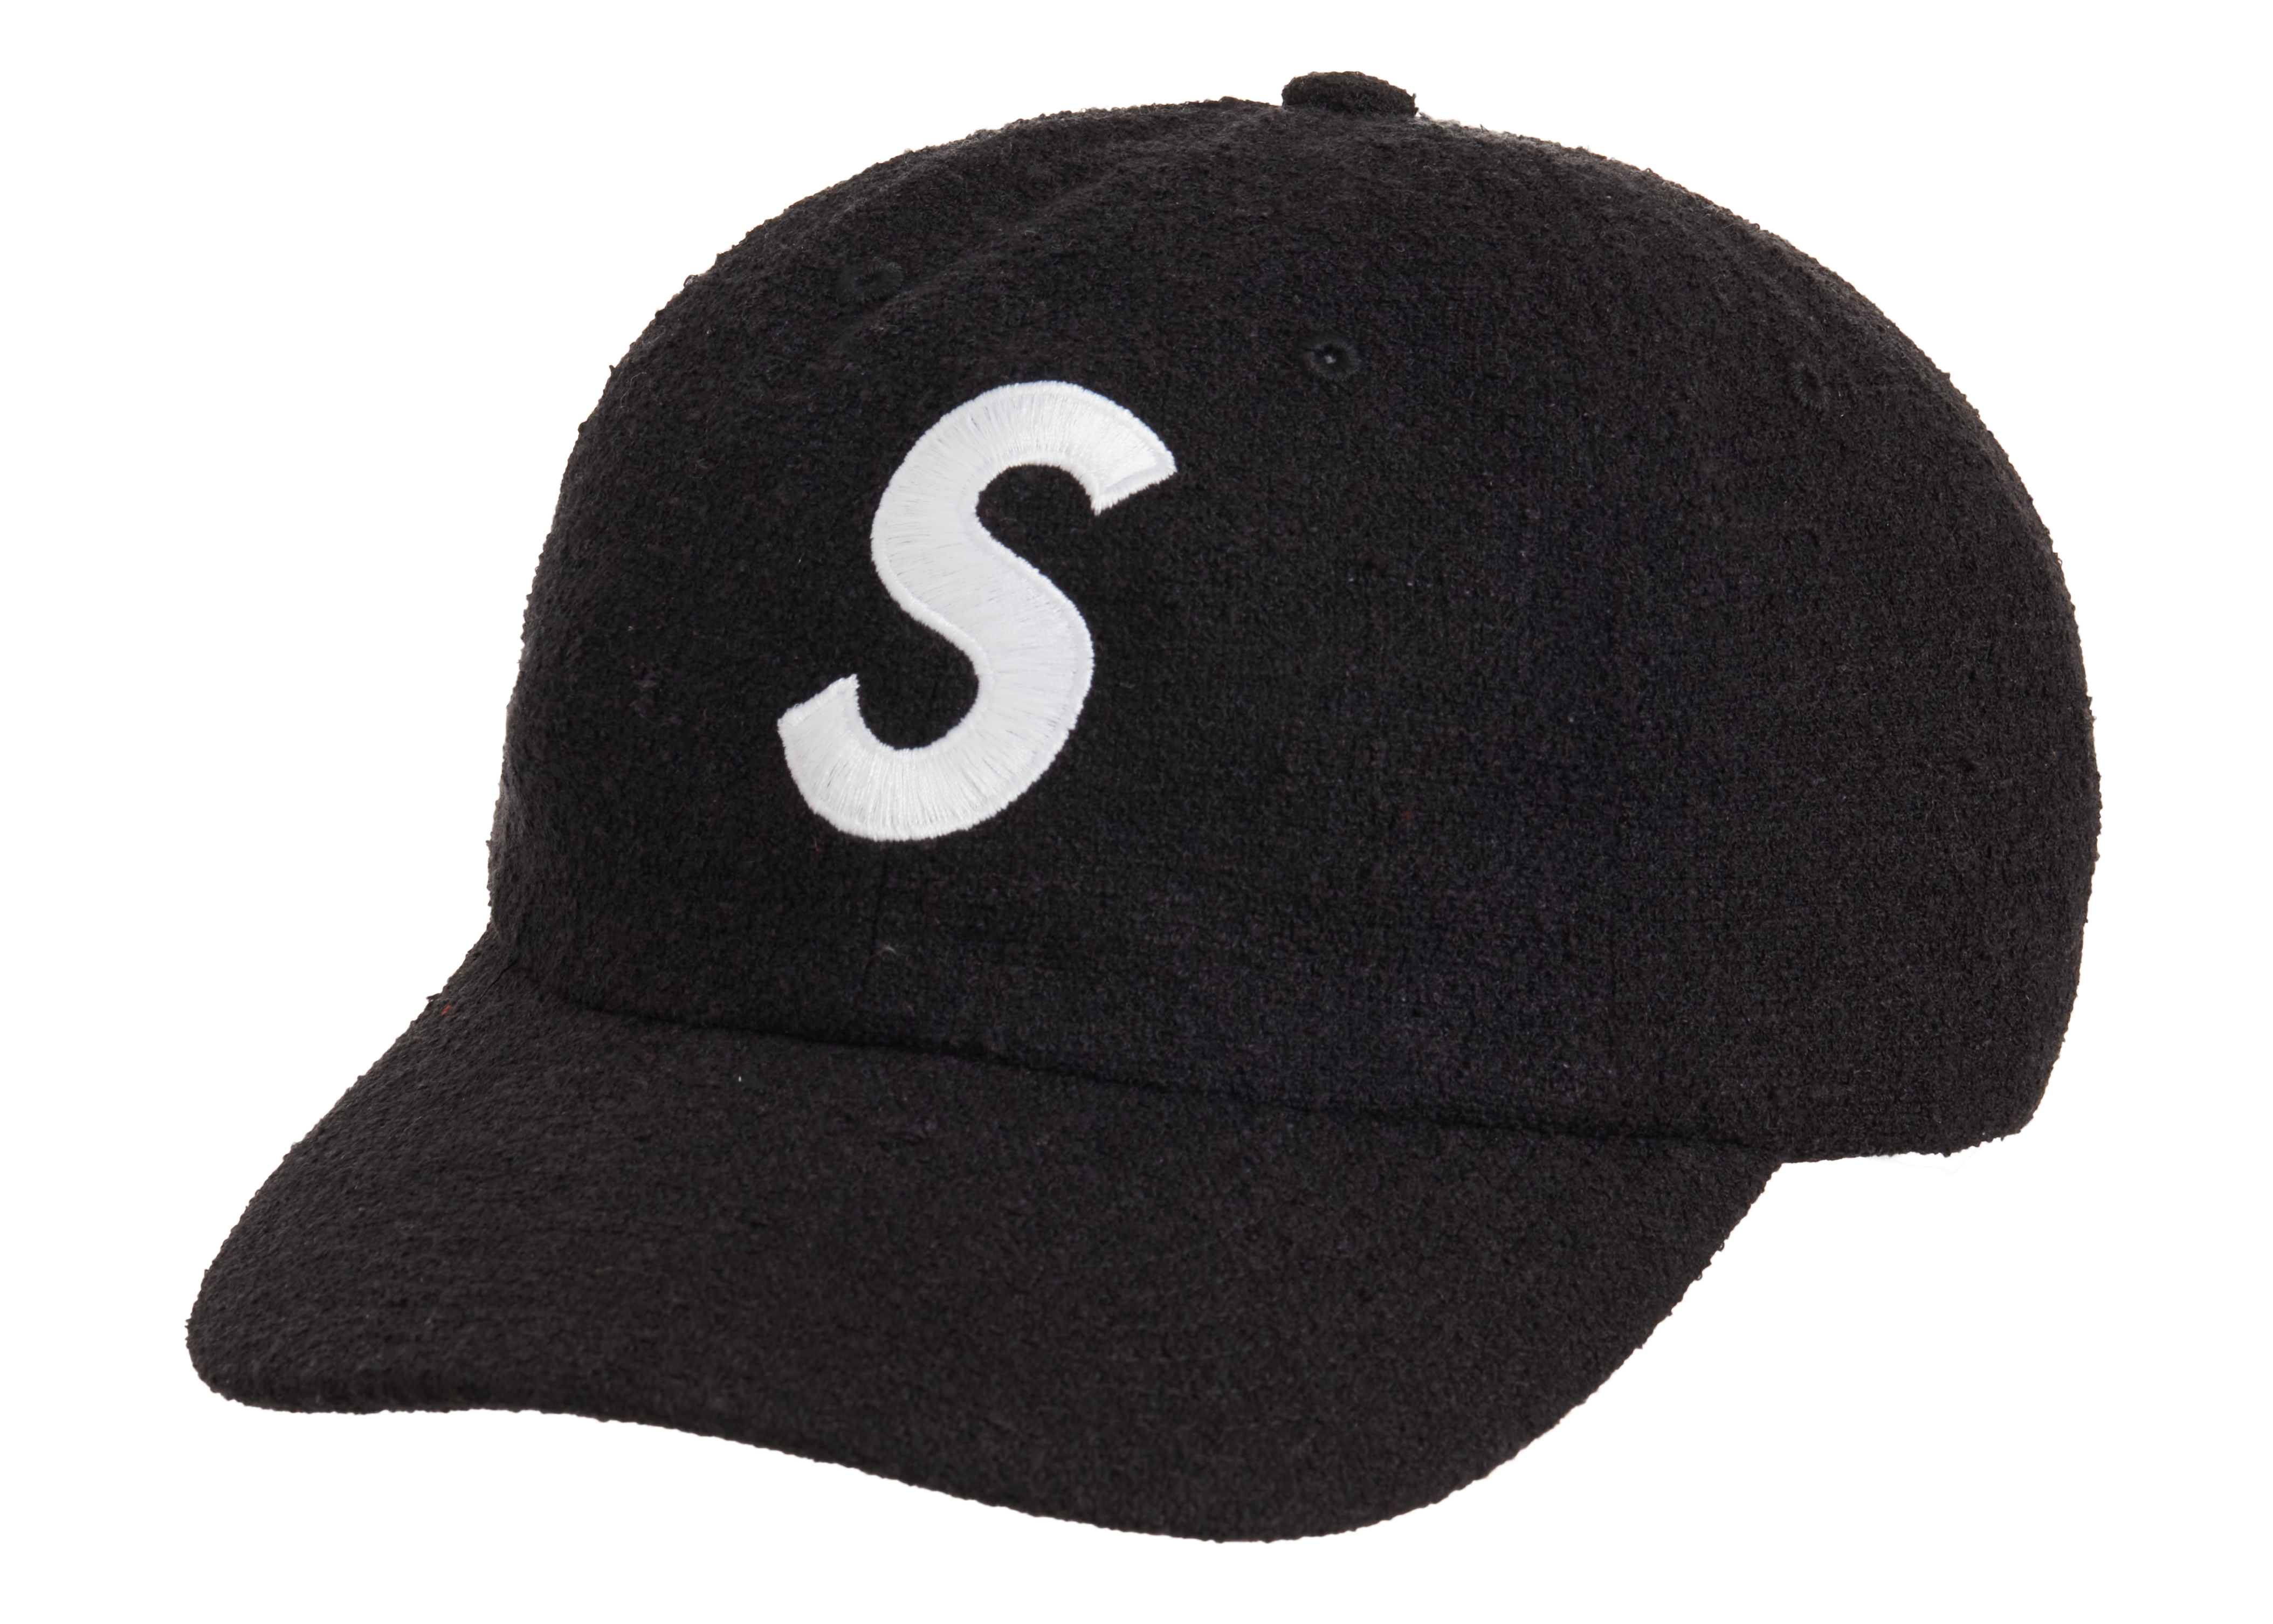 黒 Supreme Terry S Logo 6-Panel Cap Black